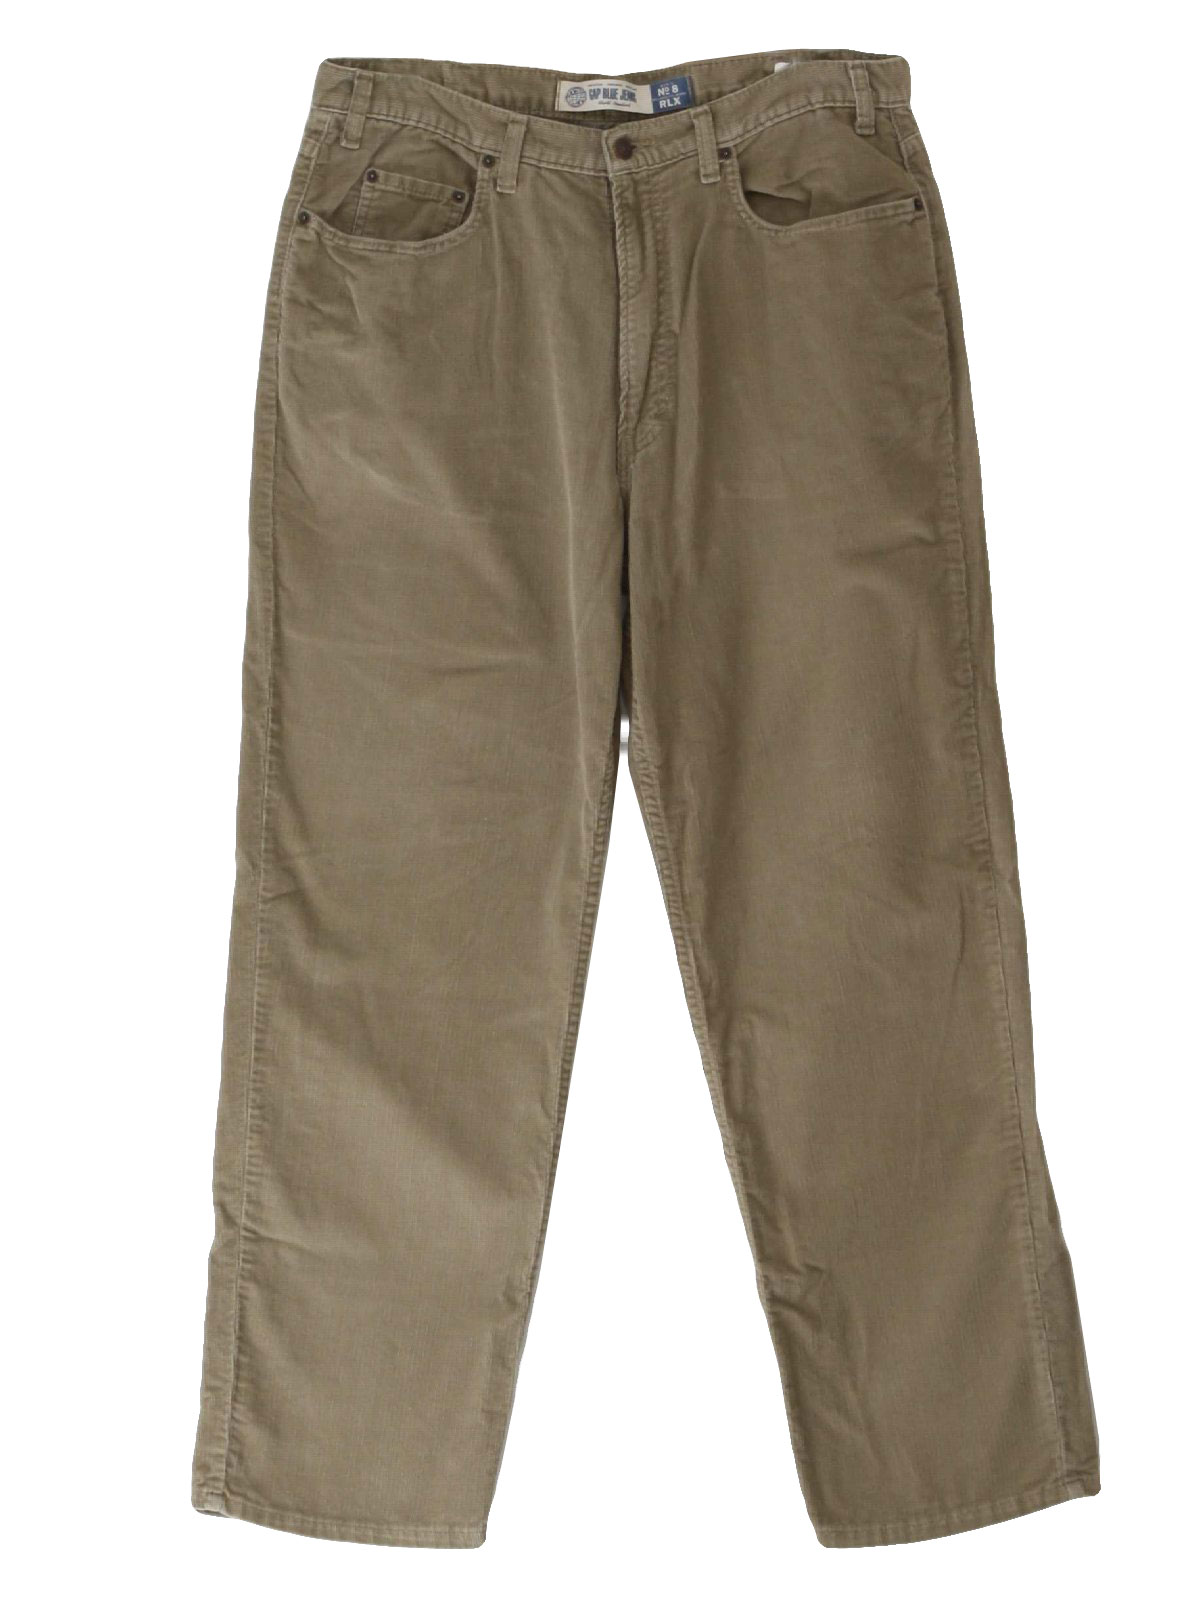 Vintage Gap 90's Pants: 90s -Gap- Mens tan cotton pinwale corduroy ...